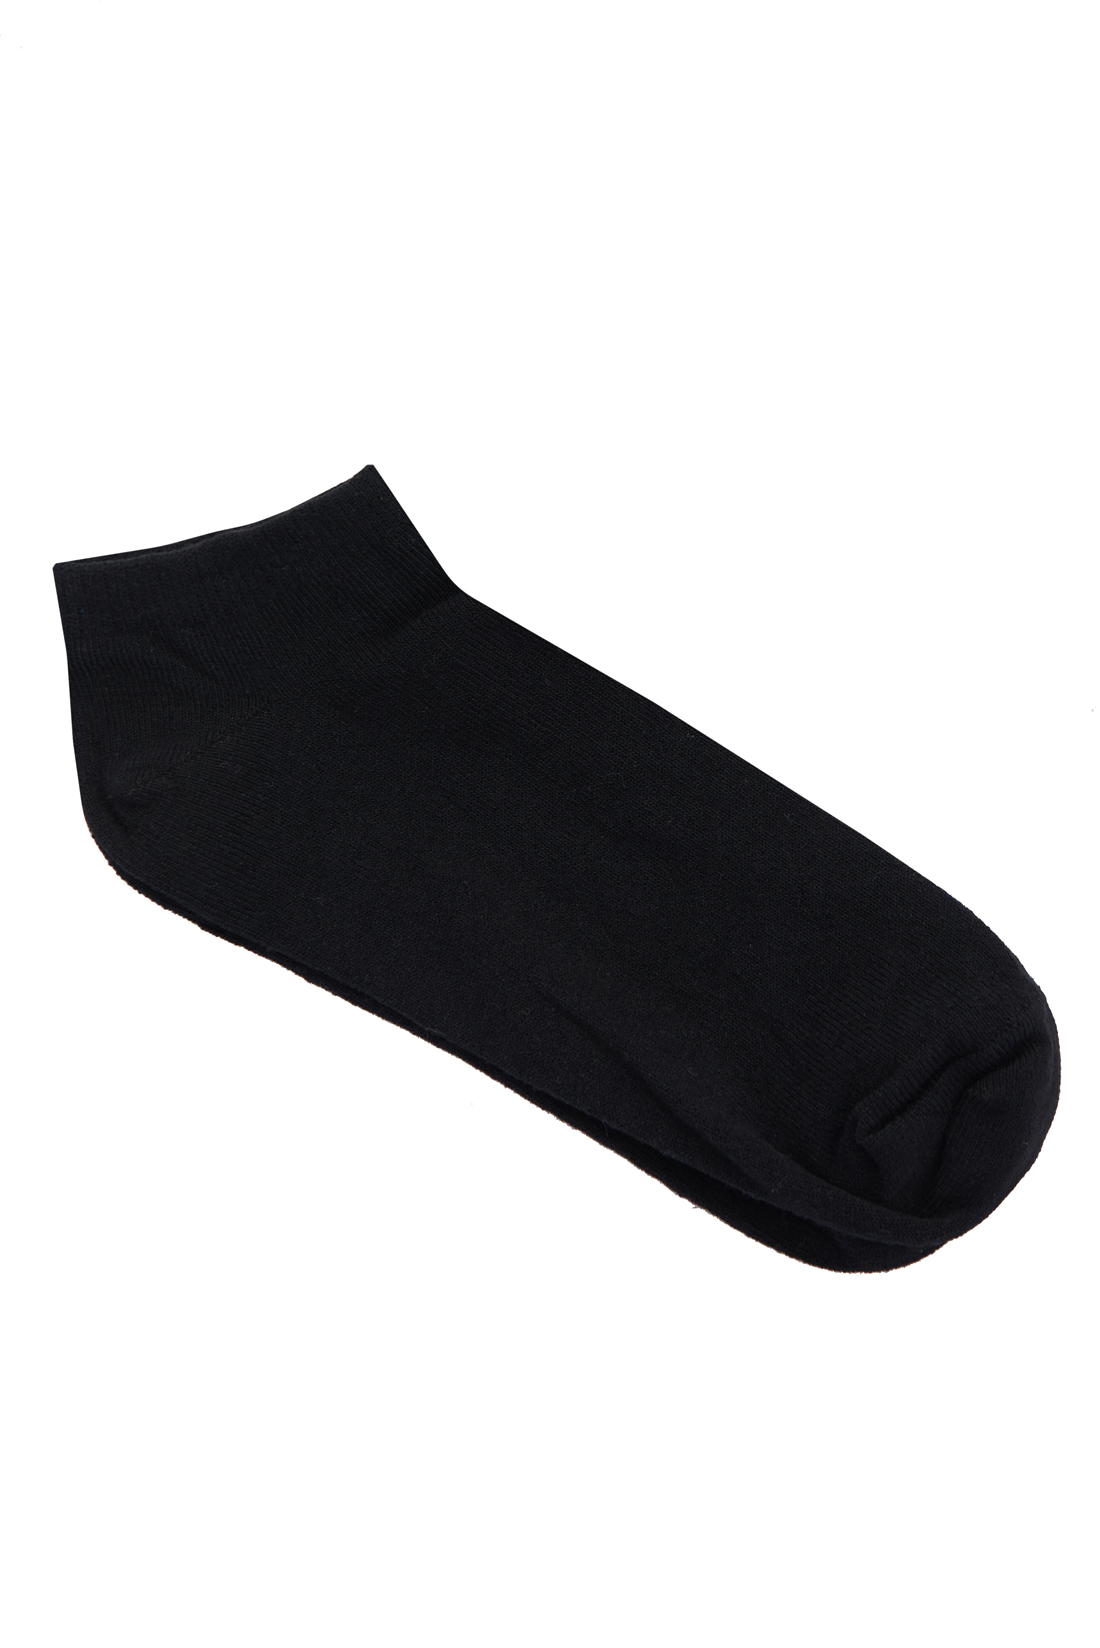 Укороченные чёрные носки (арт. baon B398034), размер 35/37, цвет черный Укороченные чёрные носки (арт. baon B398034) - фото 1